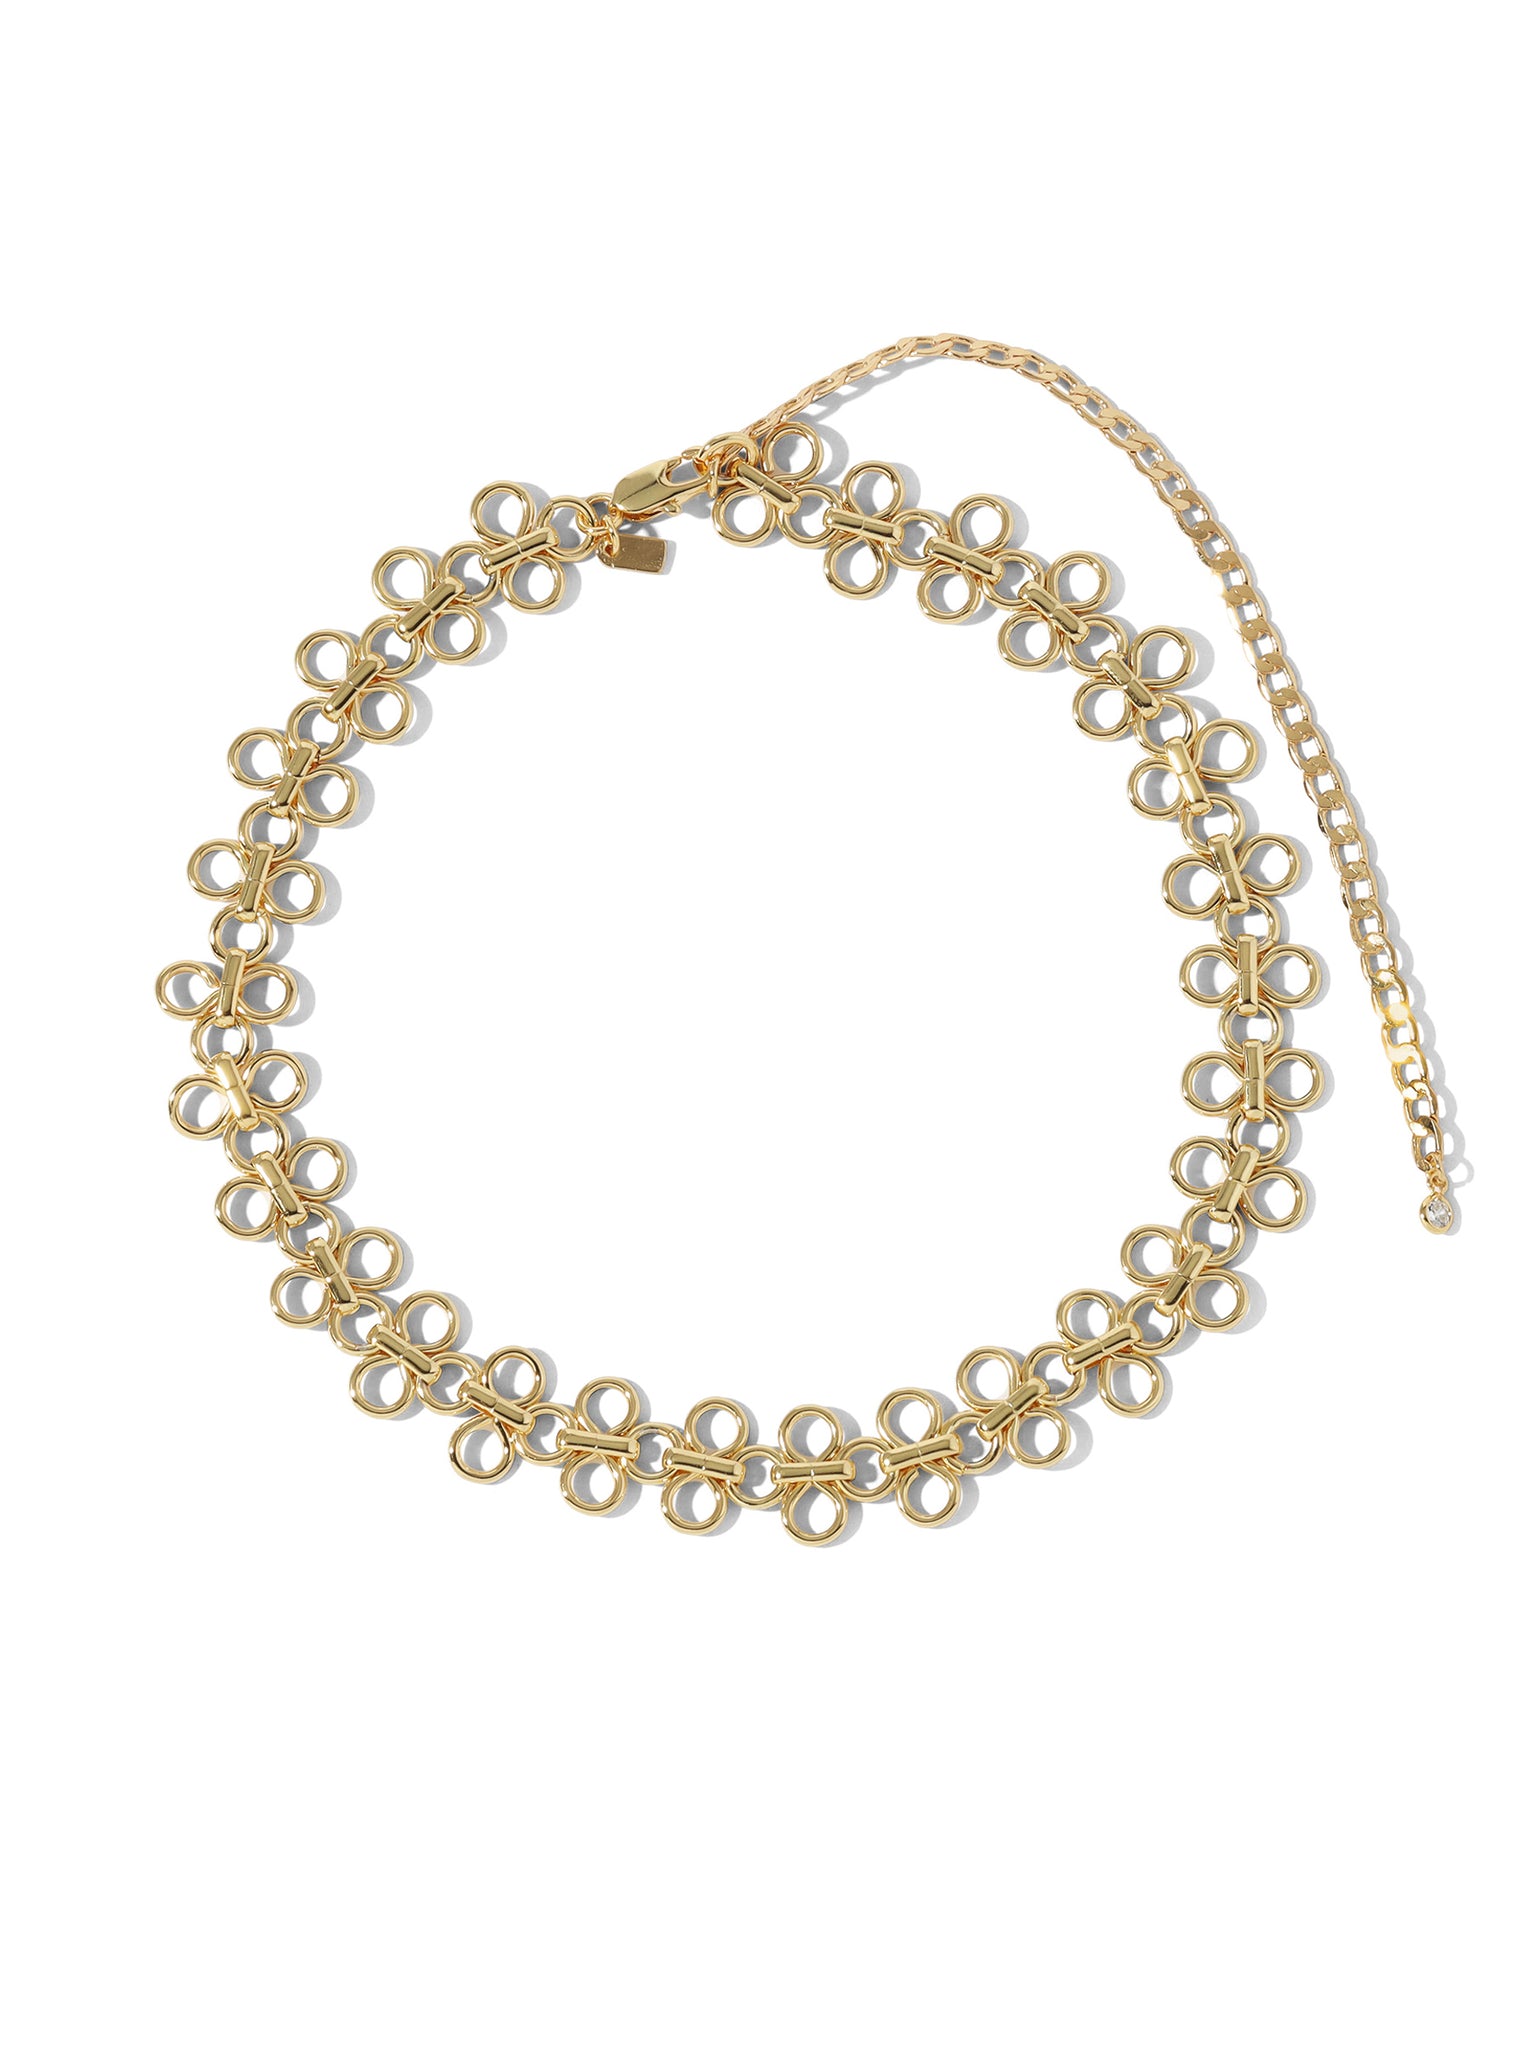 Versatile Splendour Antique Gold Choker Necklace